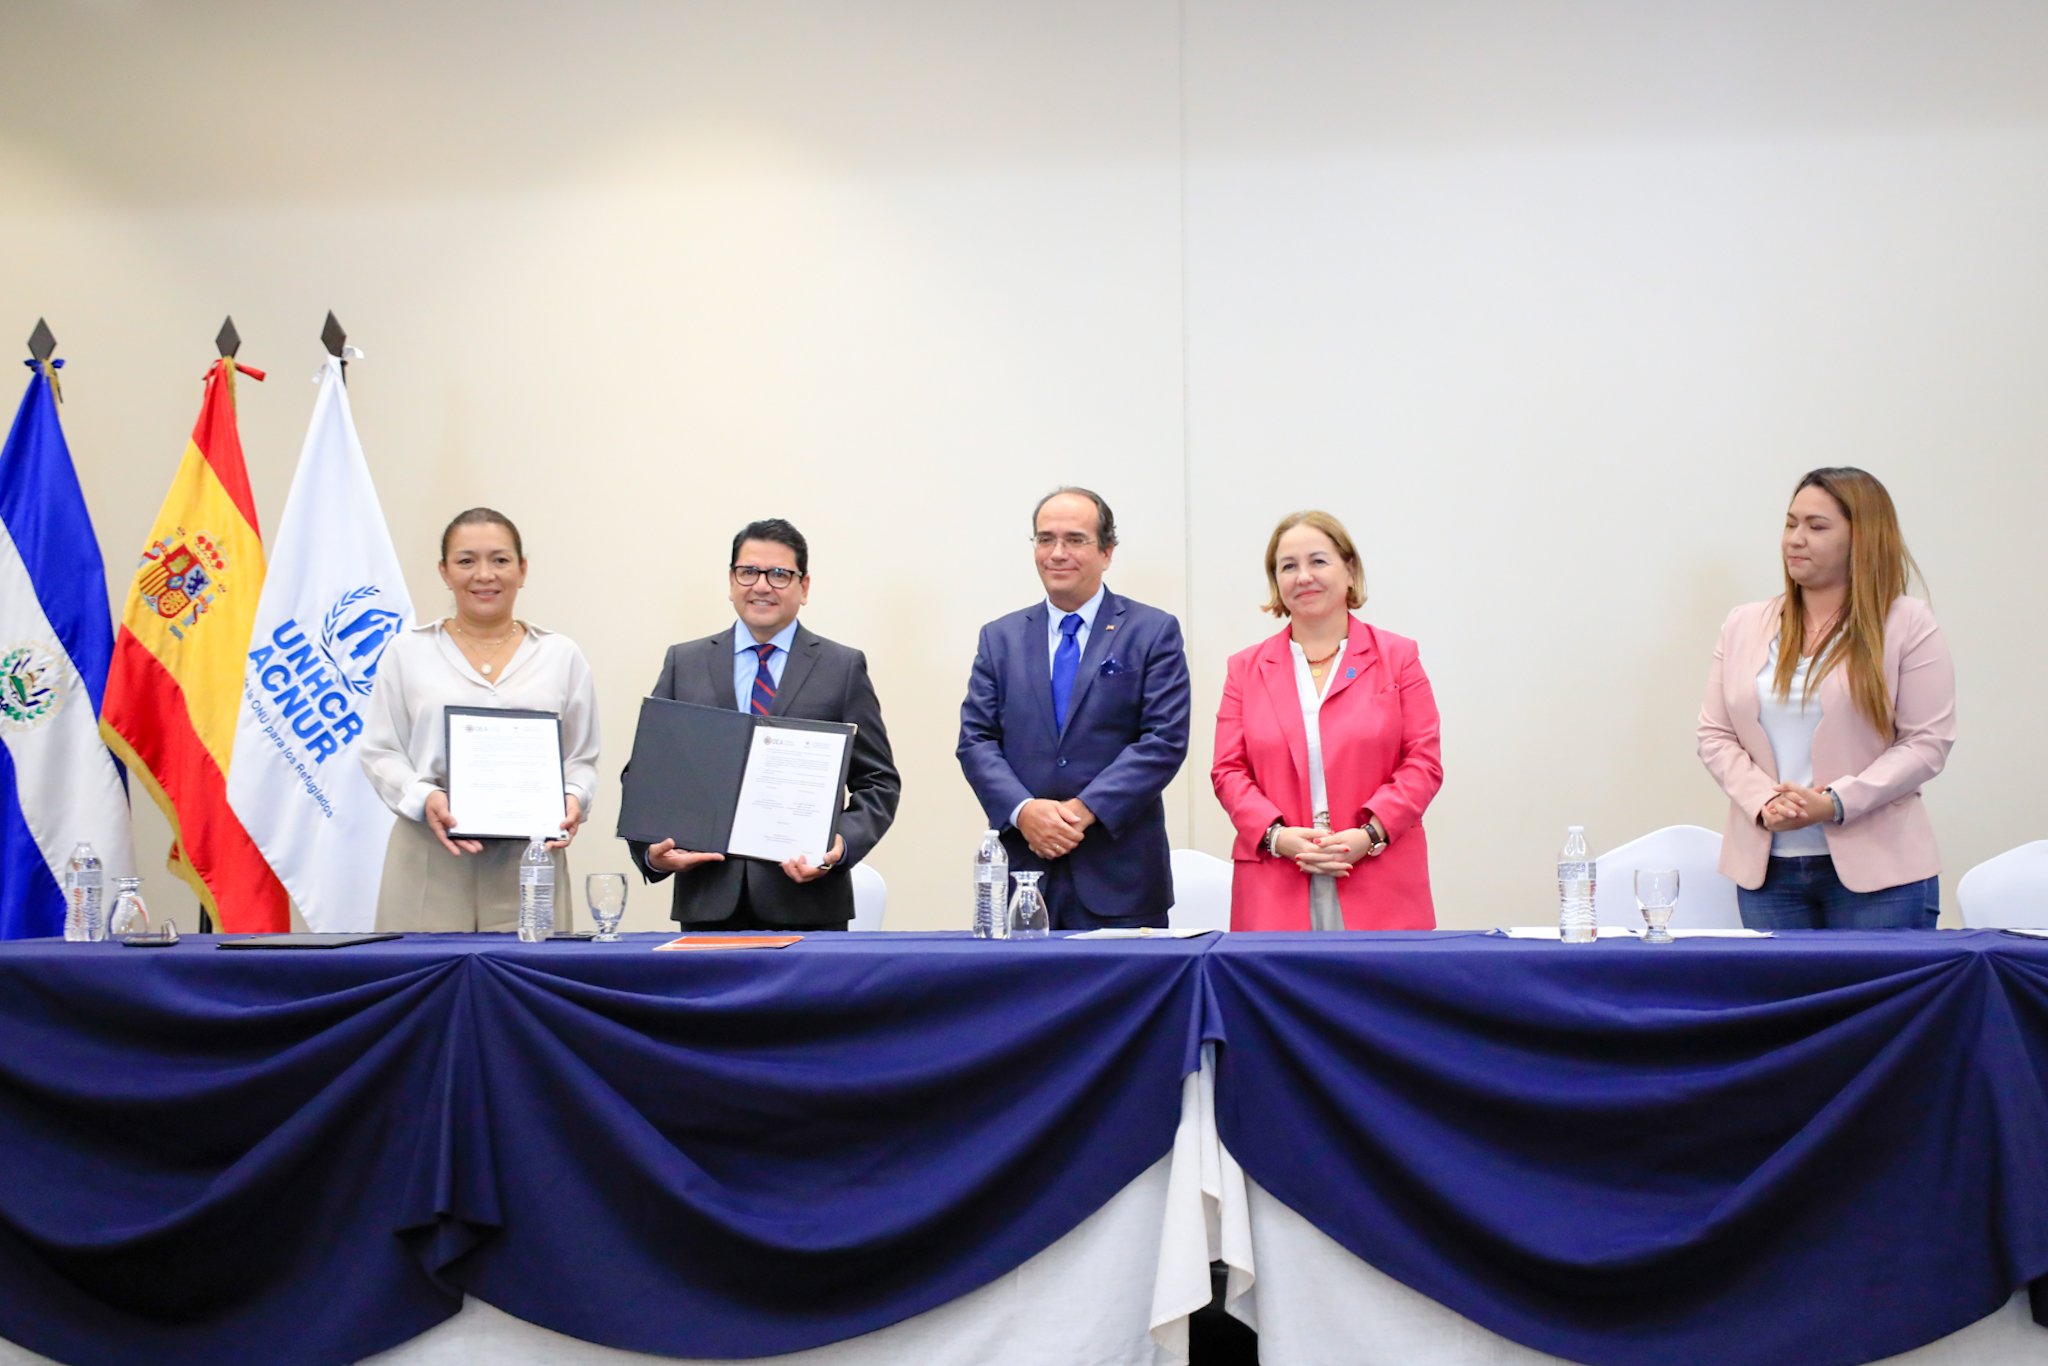 21 sept/23- Firma del Acuerdo de Ejecución del proyecto “Vinculación de niñas, niños y adolescentes retornados con necesidades de protección y sus familias a medios de vida en El Salvador